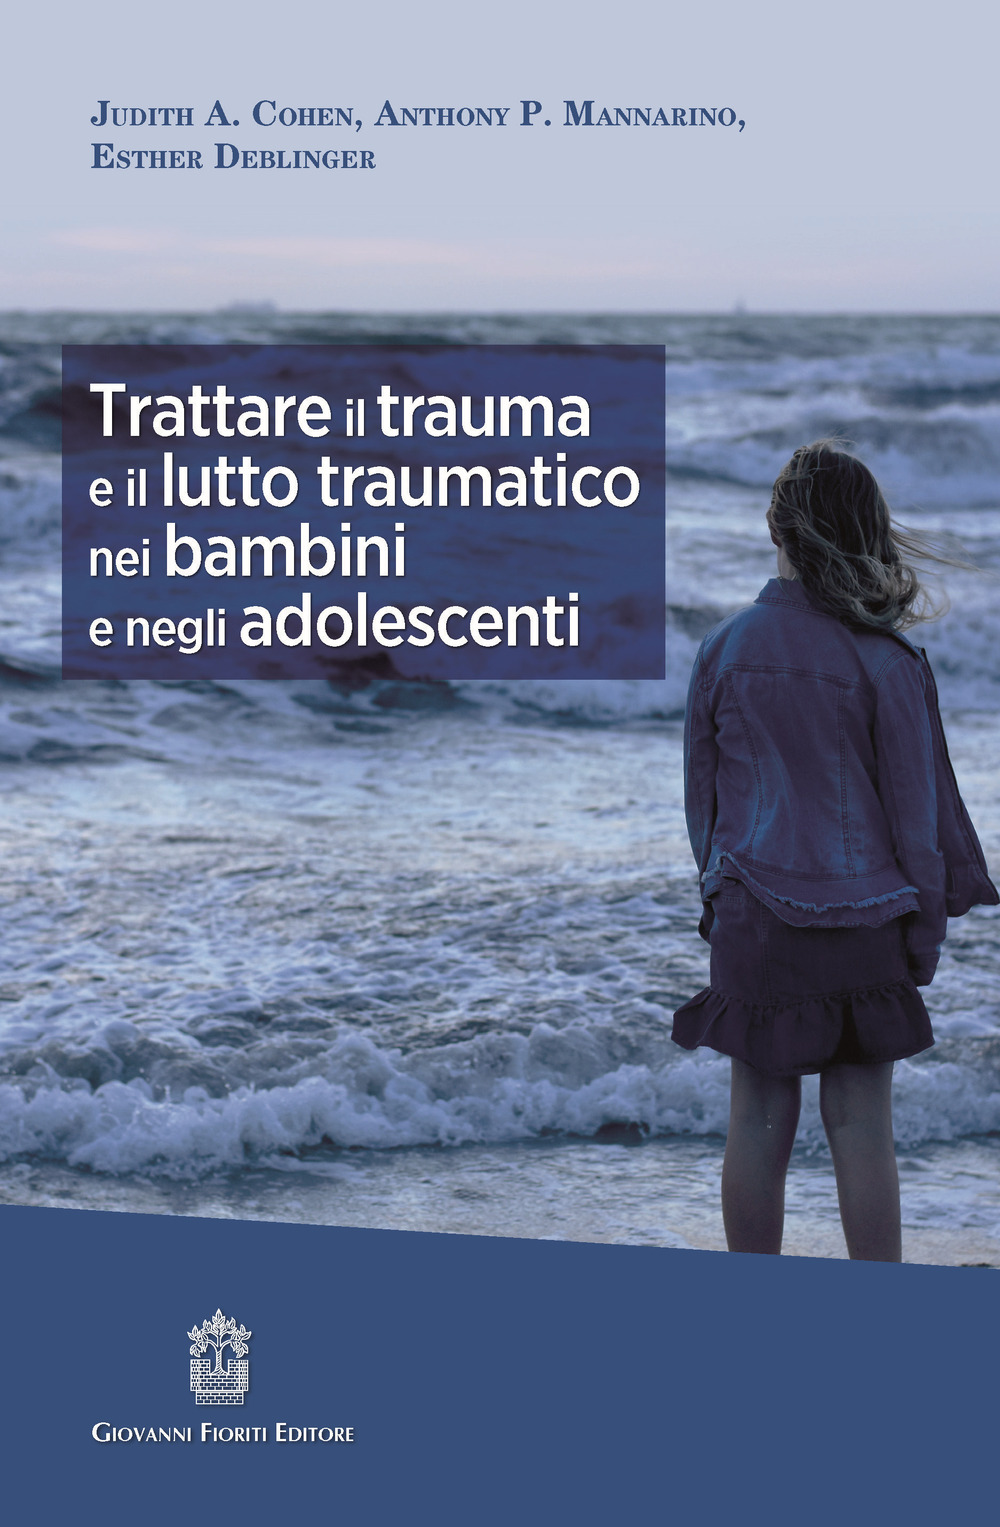 Image of Trattare il trauma e il lutto traumatico nei bambini e negli adolescenti